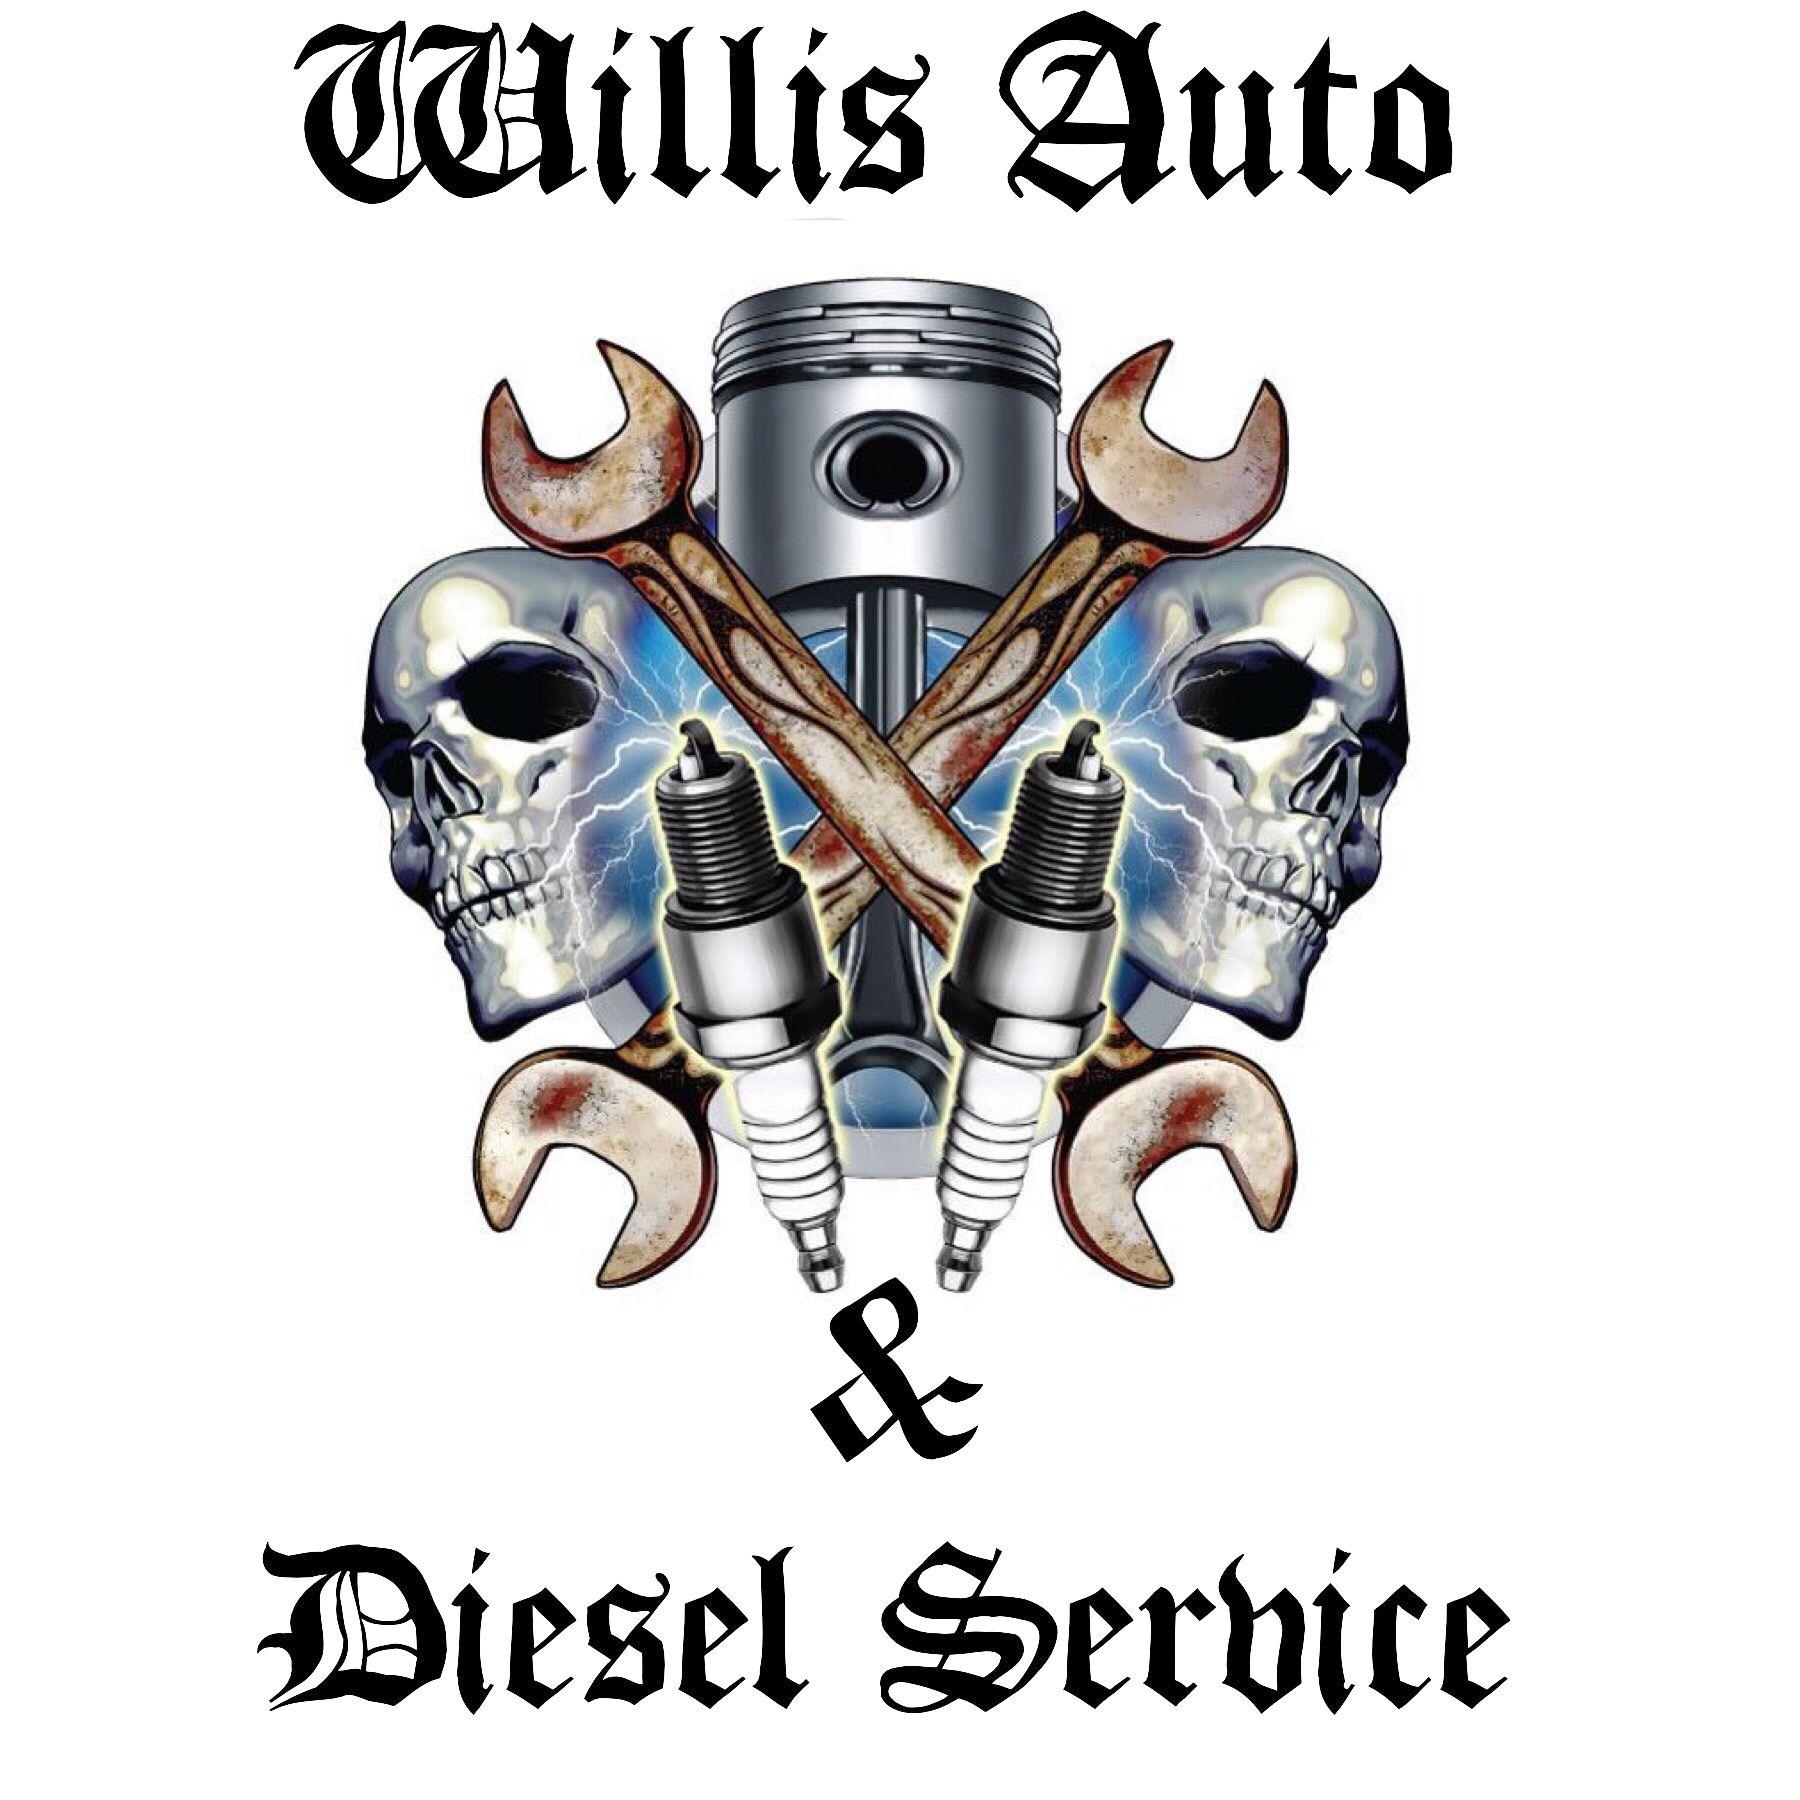 Diesel Mechanic Logo - Willis Auto and Diesel Service